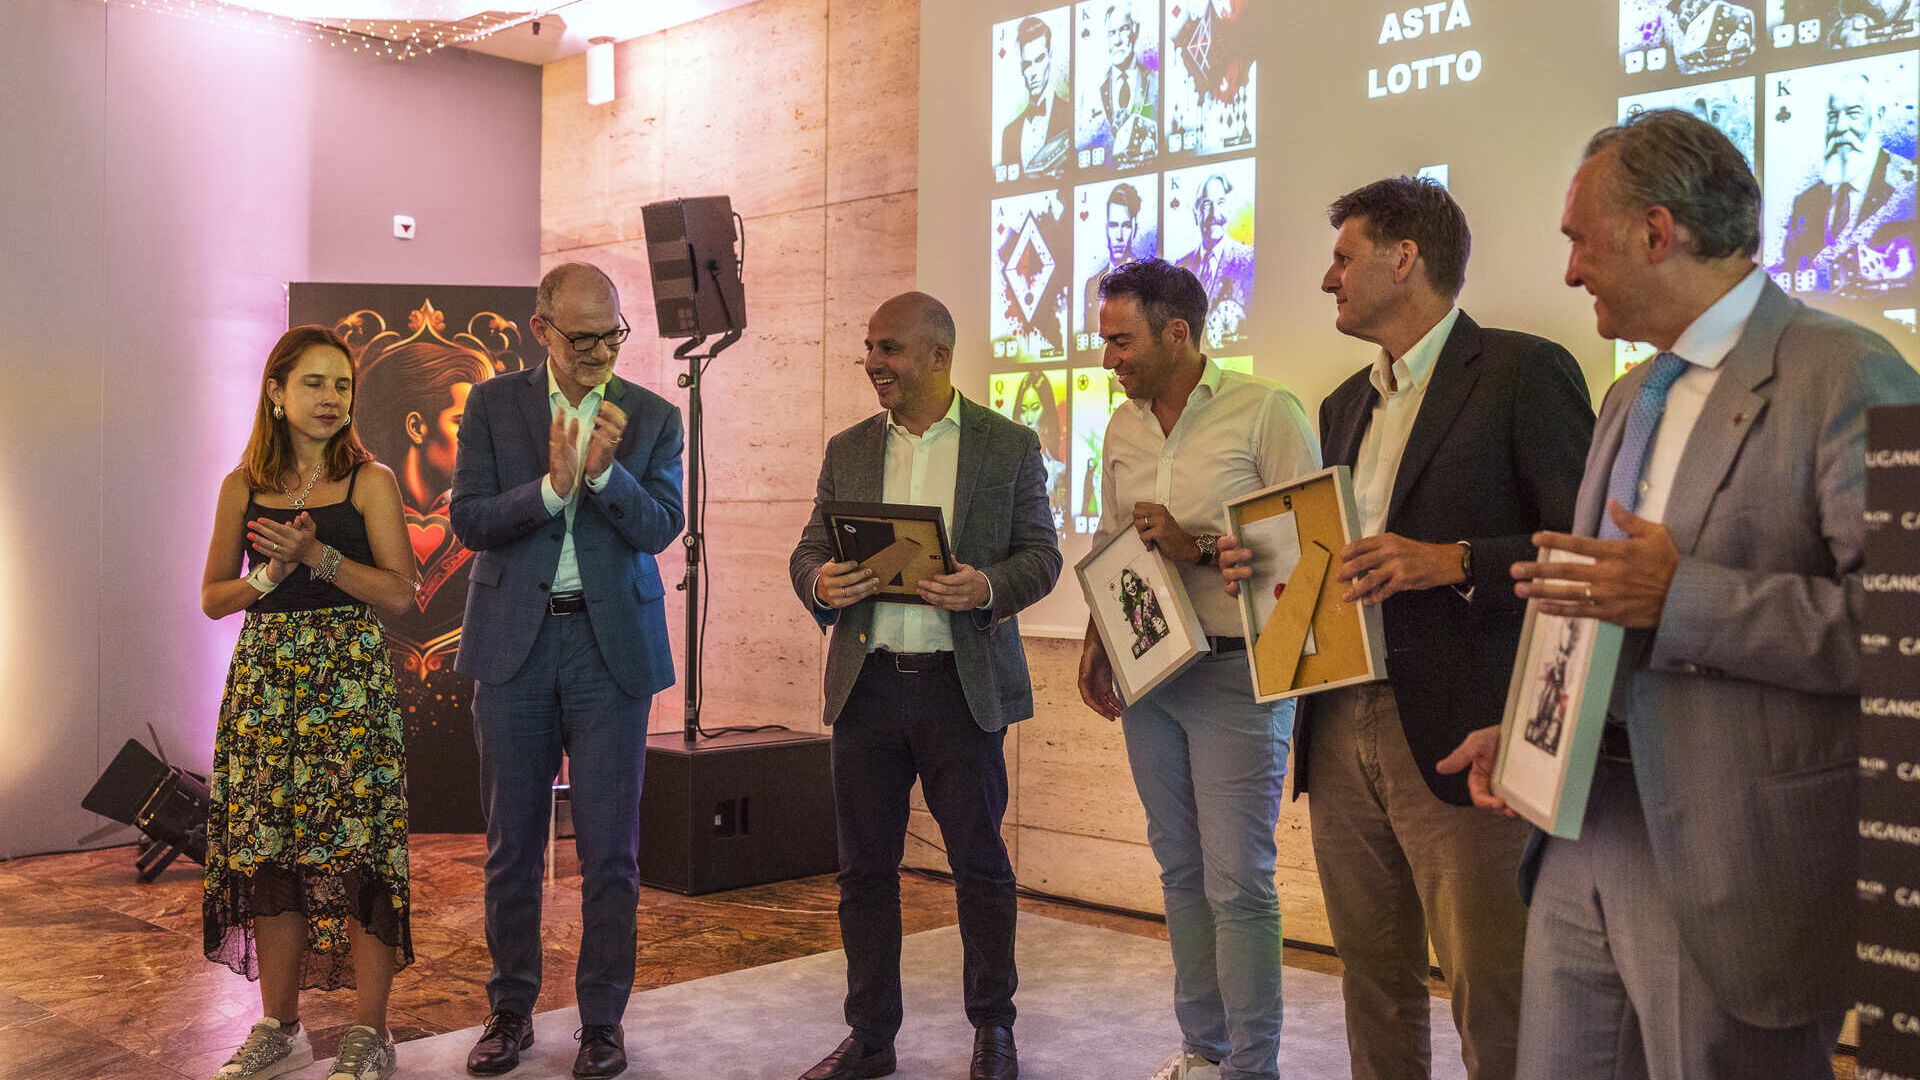 Թվային համերաշխություն. երեկո՝ նվիրված Շվեյցարիայի Լուգանո կազինոյի NFT հավաքածուին